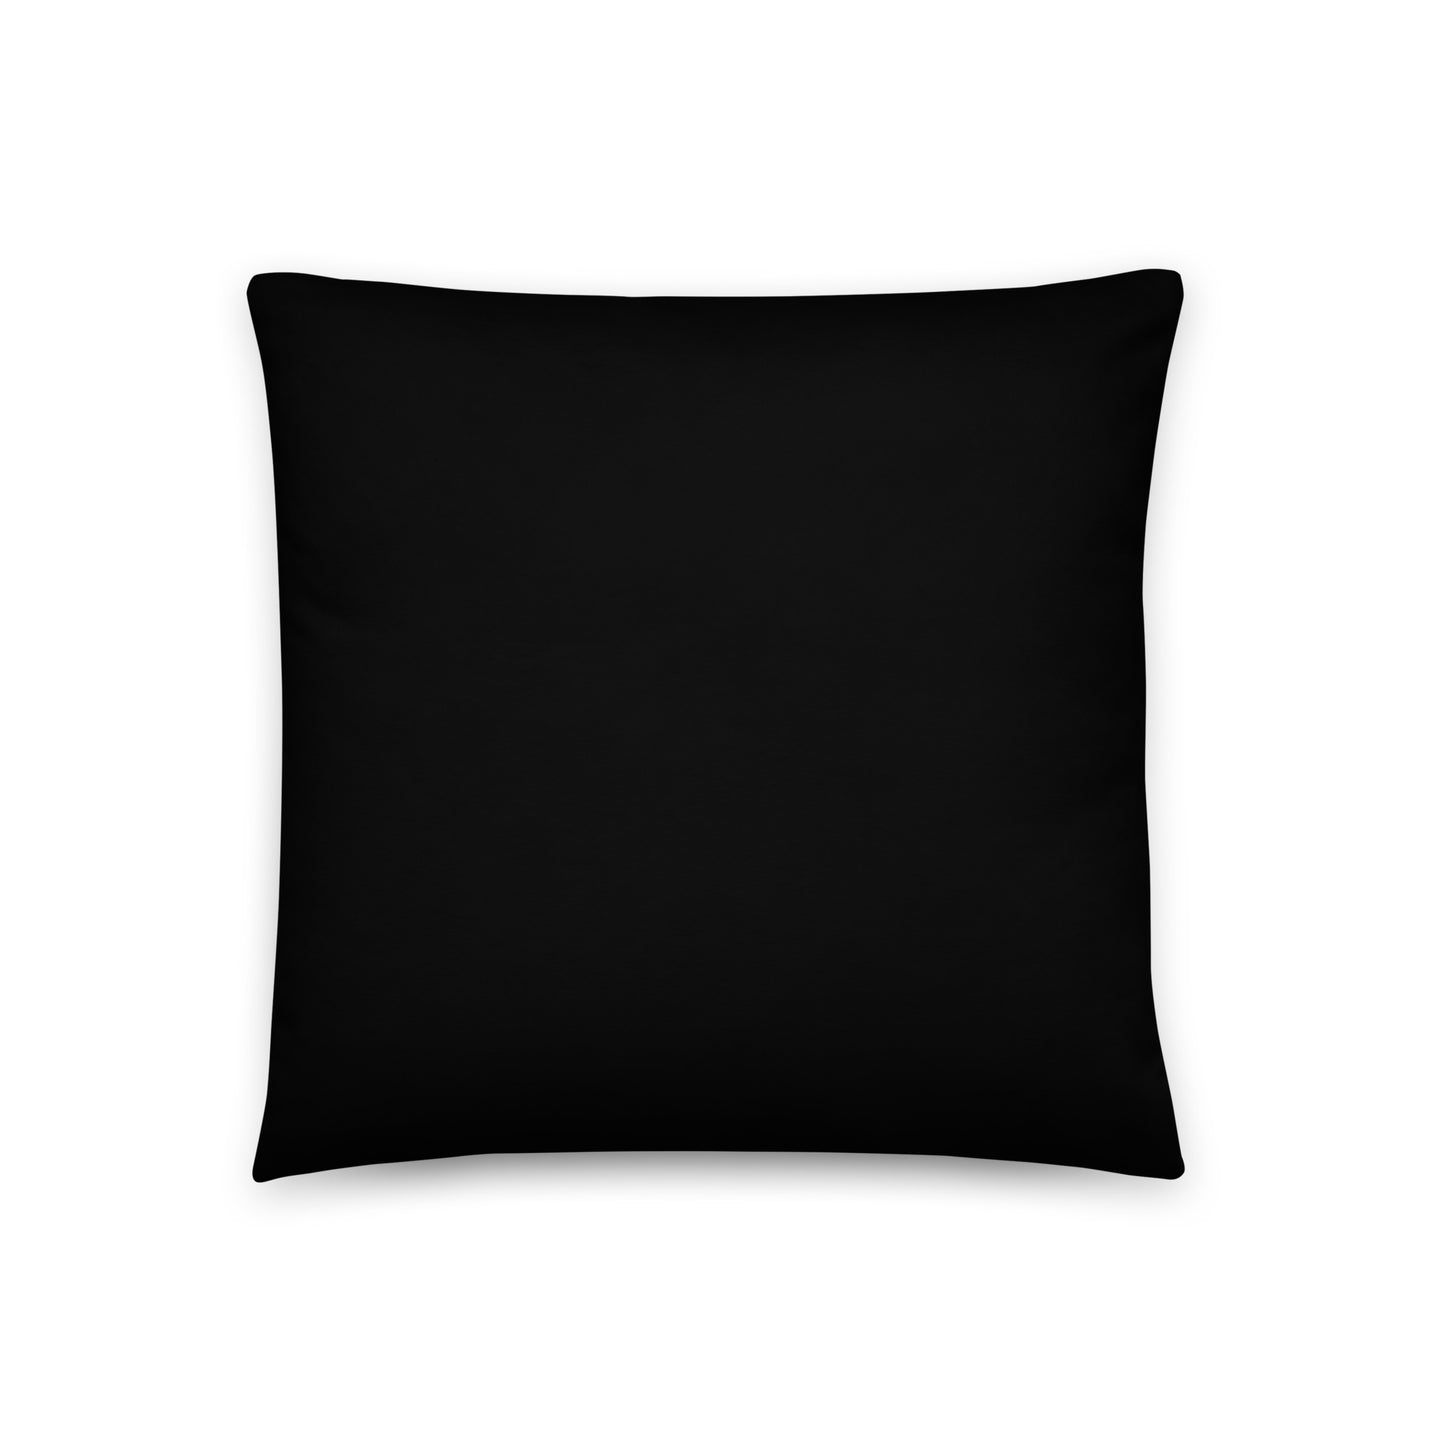 Axson Georgia Basic Pillow